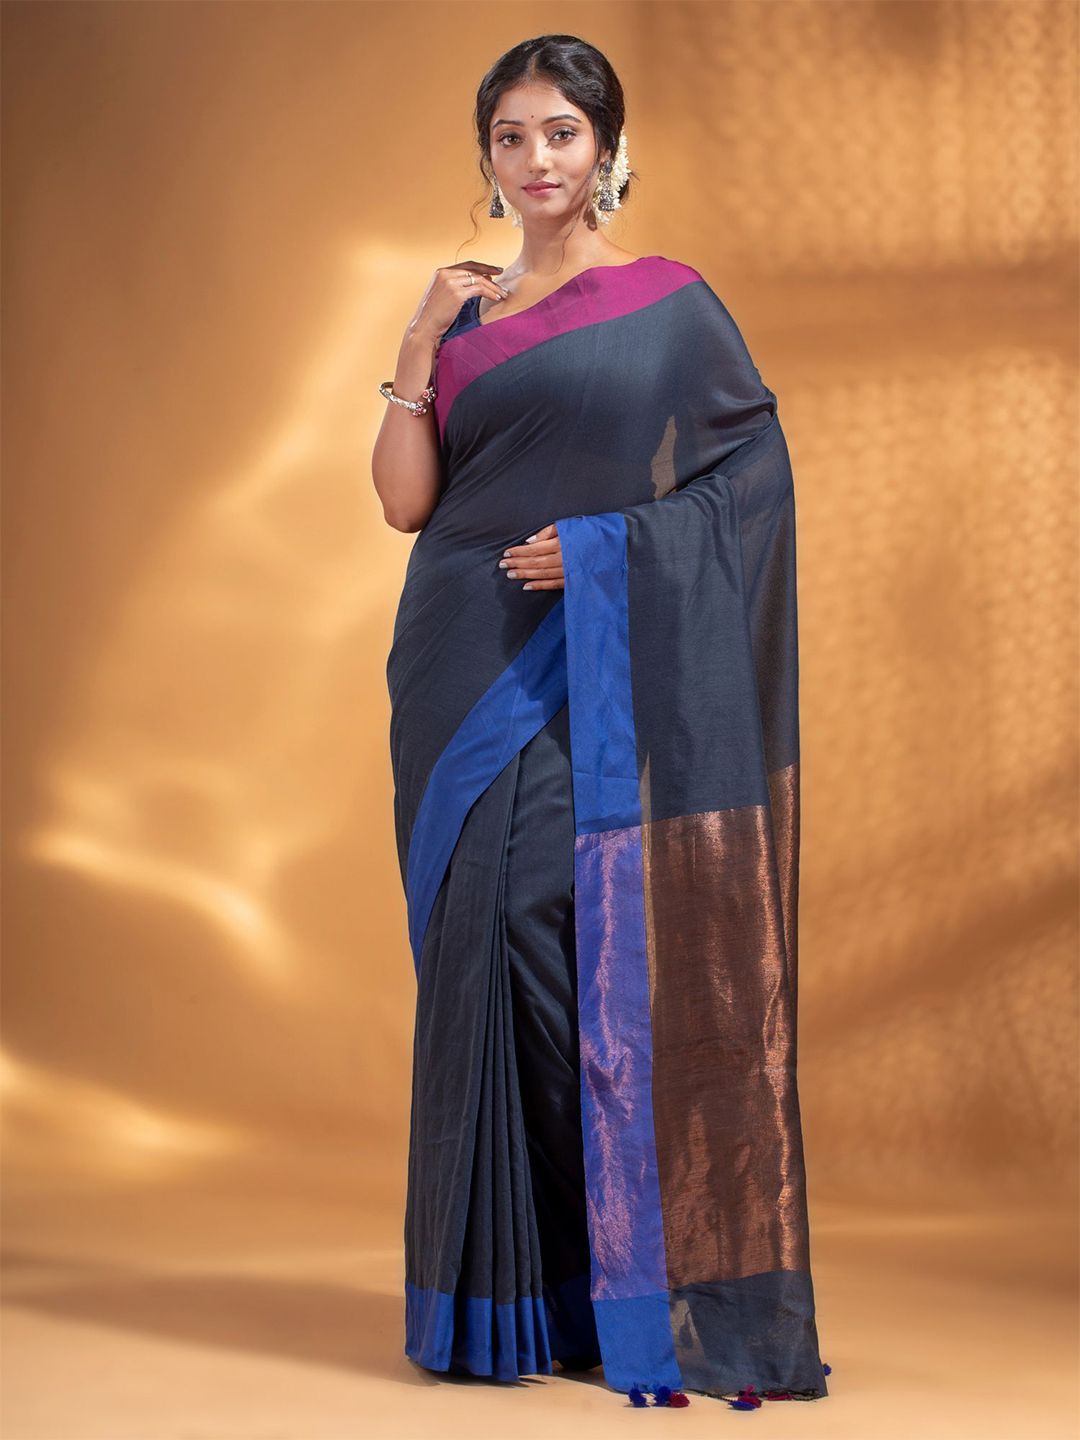 Arhi Grey & Black Woven Design Pure Cotton Saree Price in India